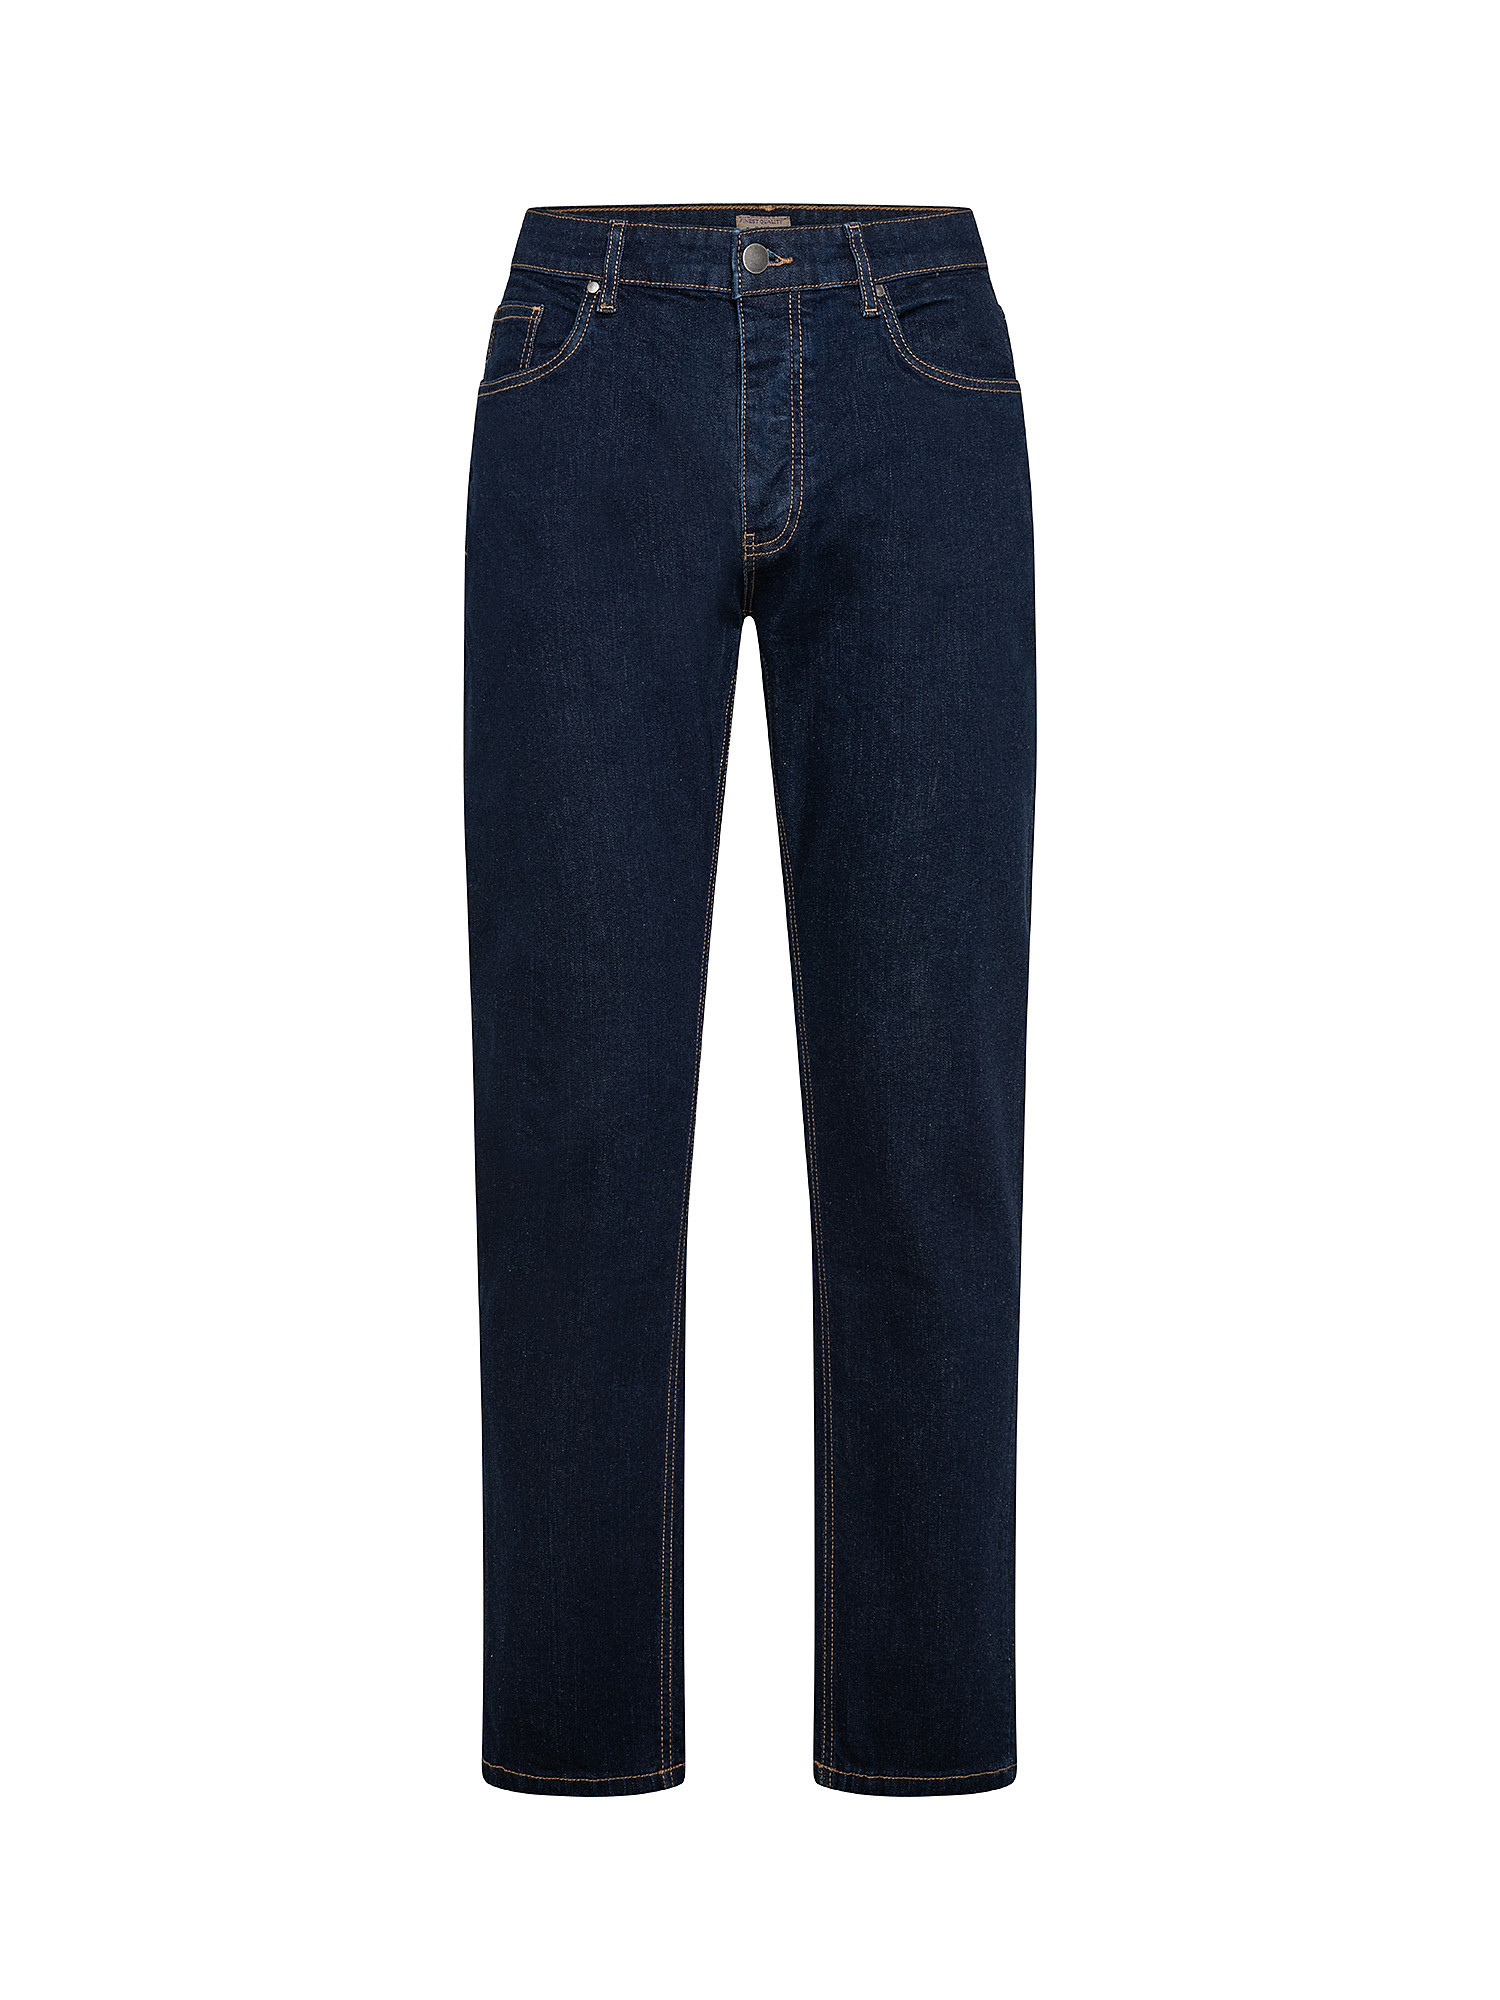 Five pocket jeans, Dark Blue, large image number 0